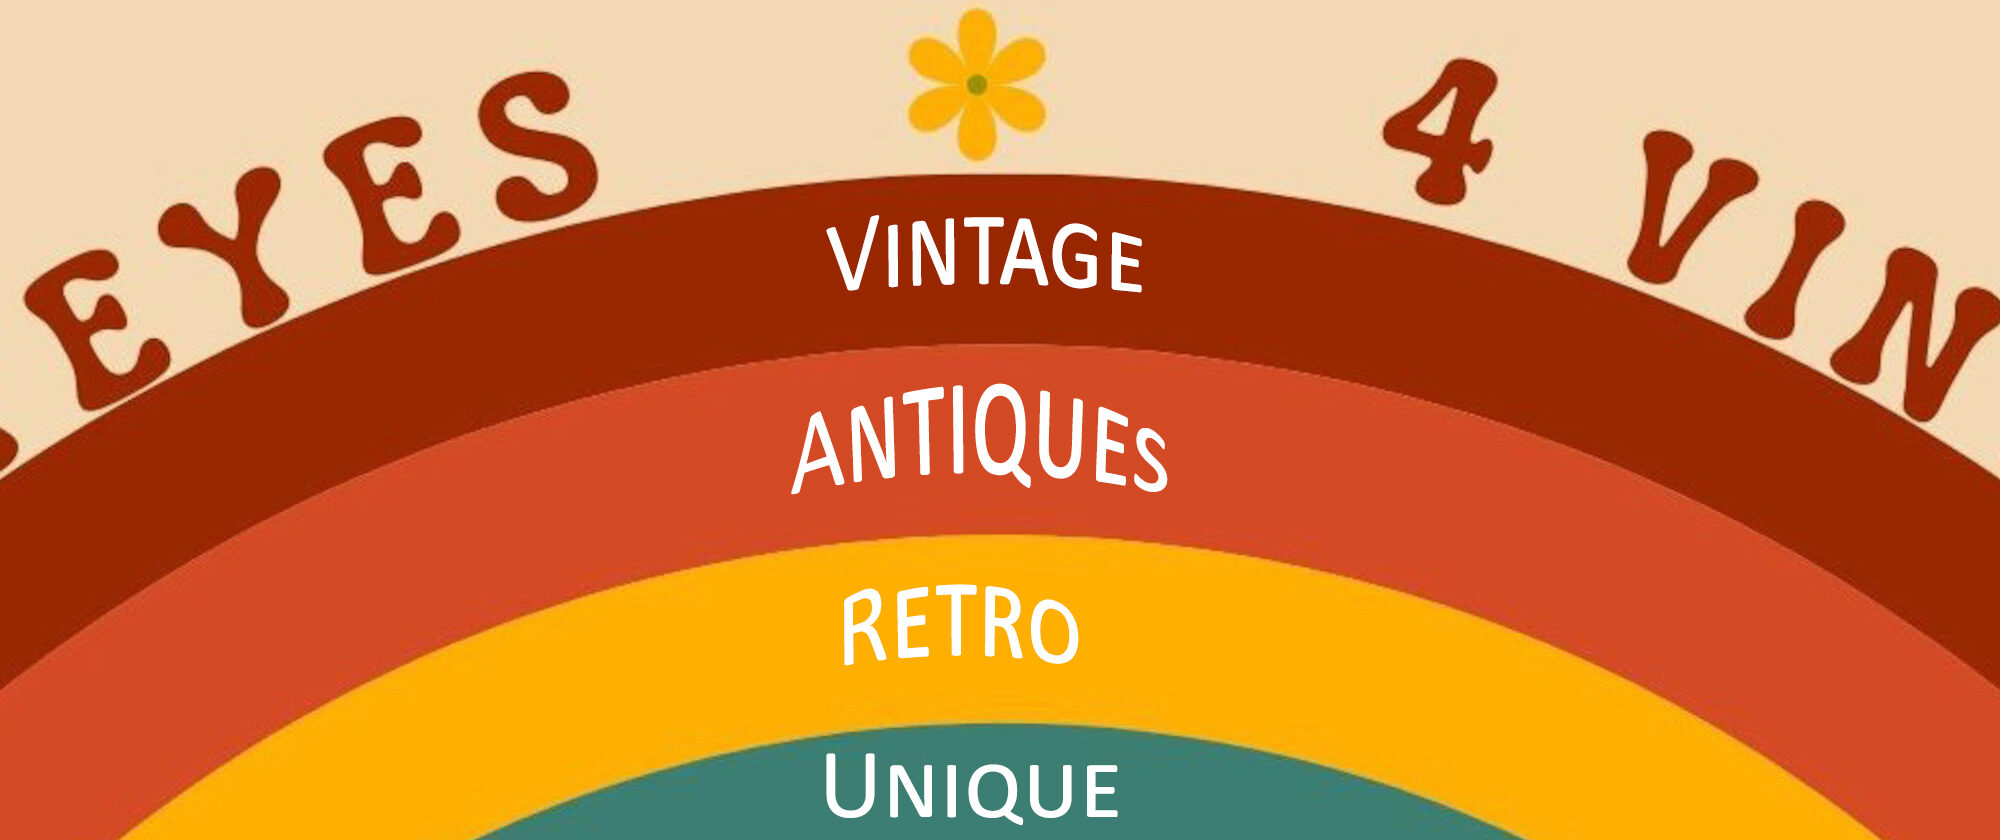 Vintage, Antiques, Retro, Unique Treasures for Sale